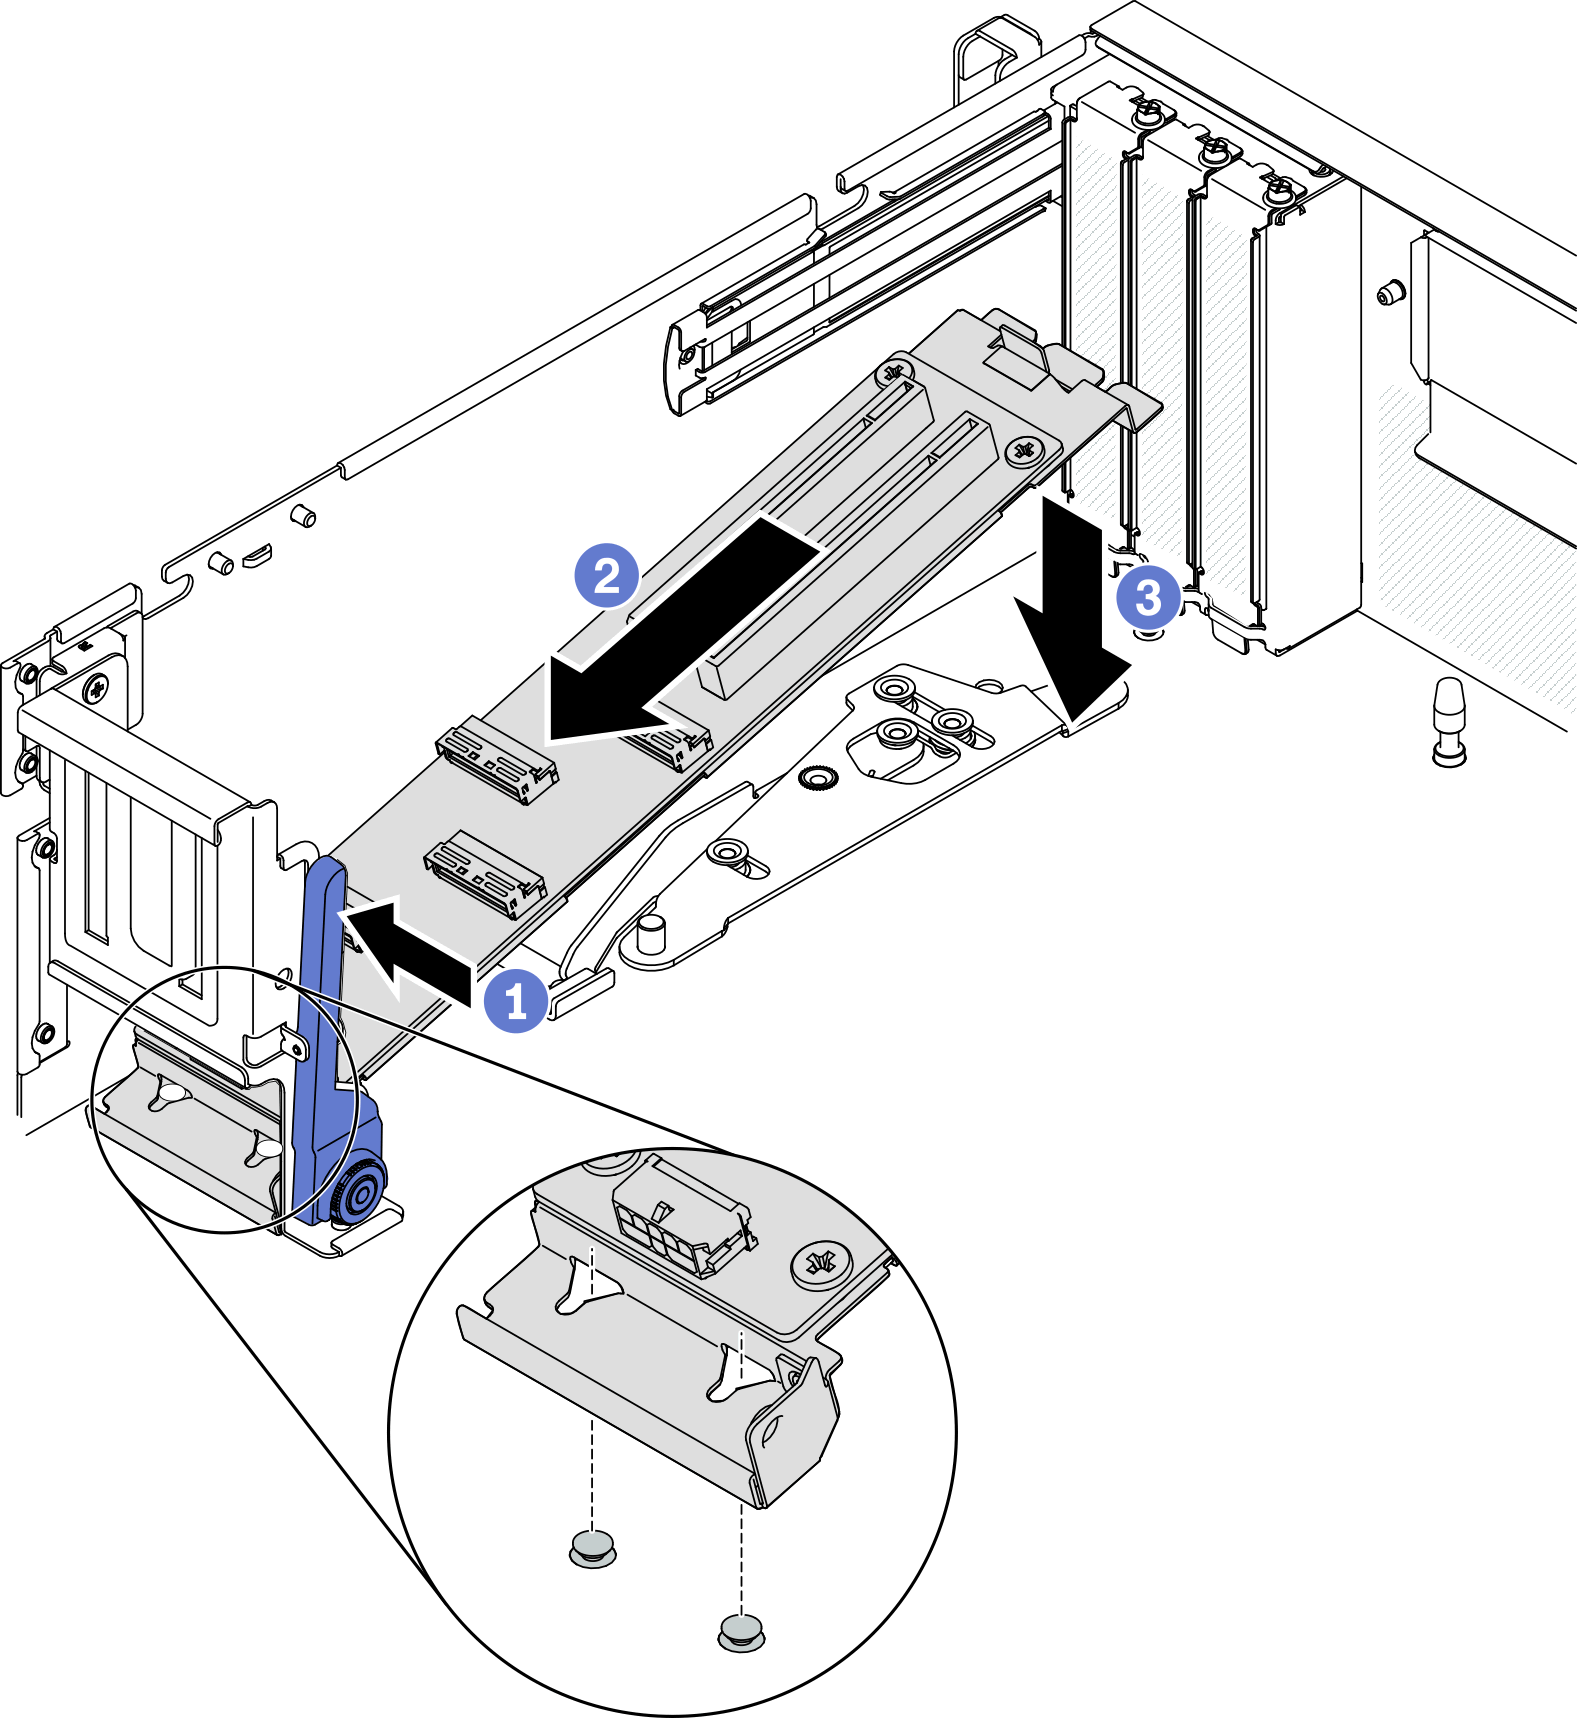 Placing the module de la carte d’extension d’E-S avant into the chassis